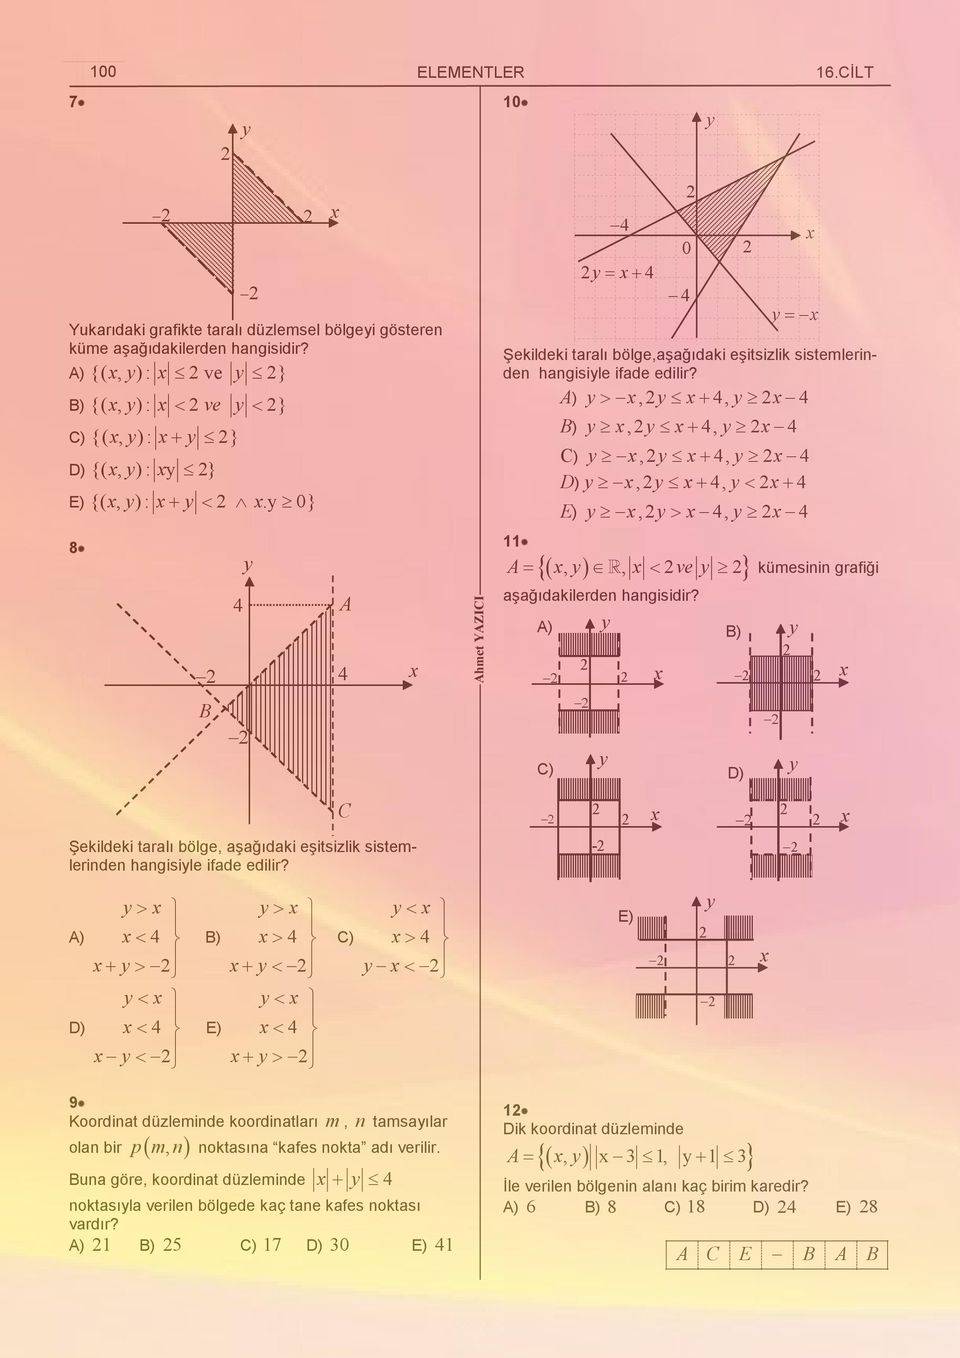 ),, 11 ),, ),, D),, E),,,, ve 0 kümesinin grafiği ) ) ) D) Şekildeki taralı bölge, aşağıdaki eşitsizlik sistemlerinden hangisile ifade edilir?